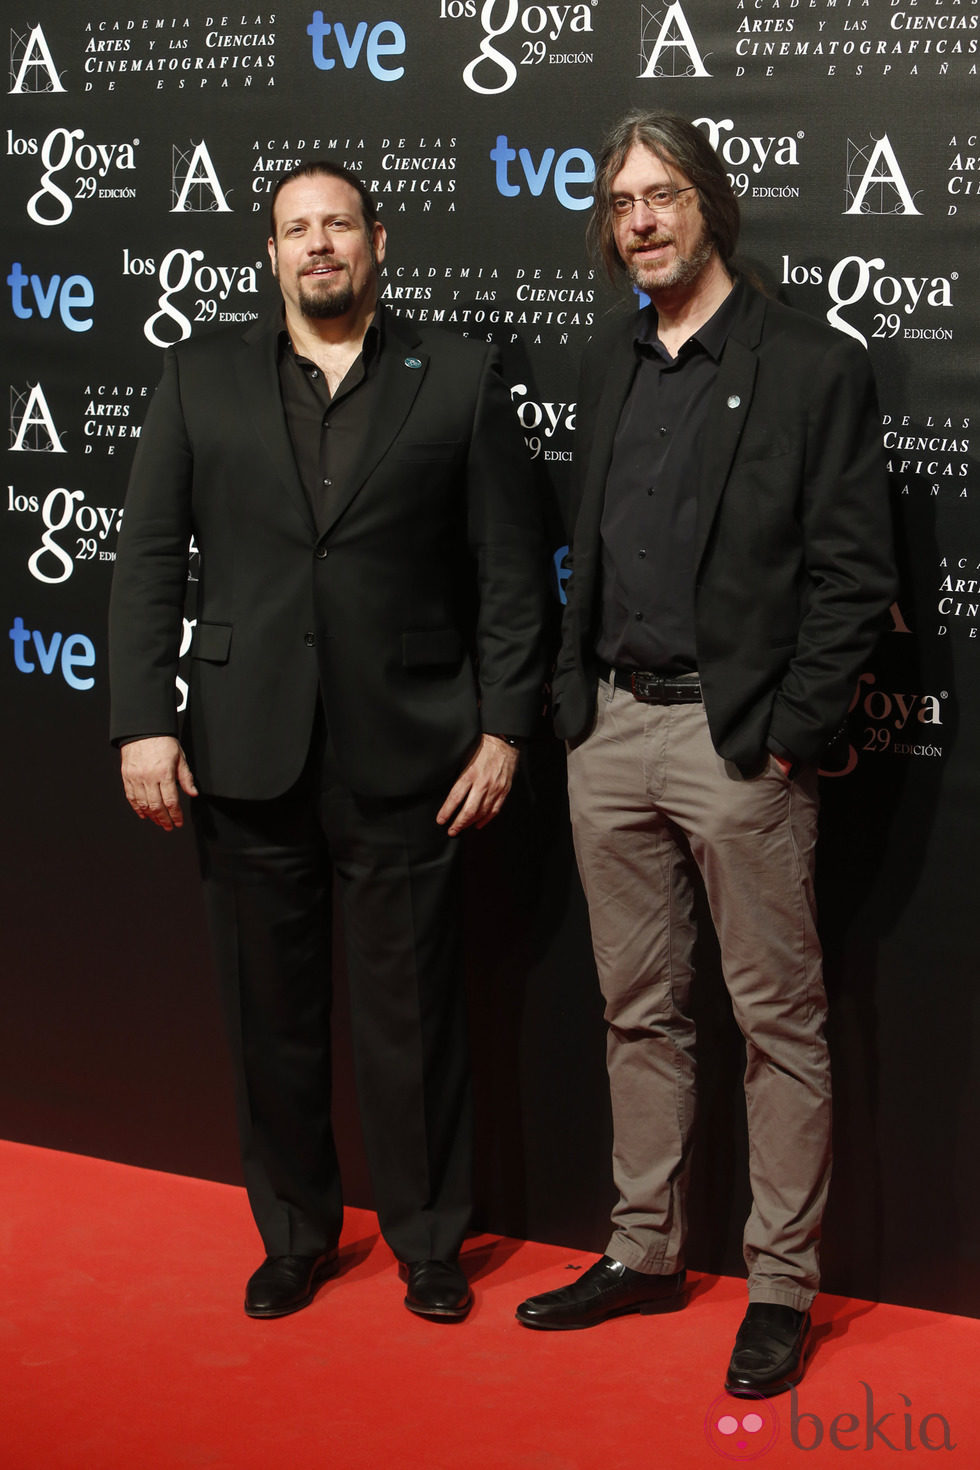 Esteban Roel y Juanfer Andrés en la fiesta de los nominados a los Goya 2015